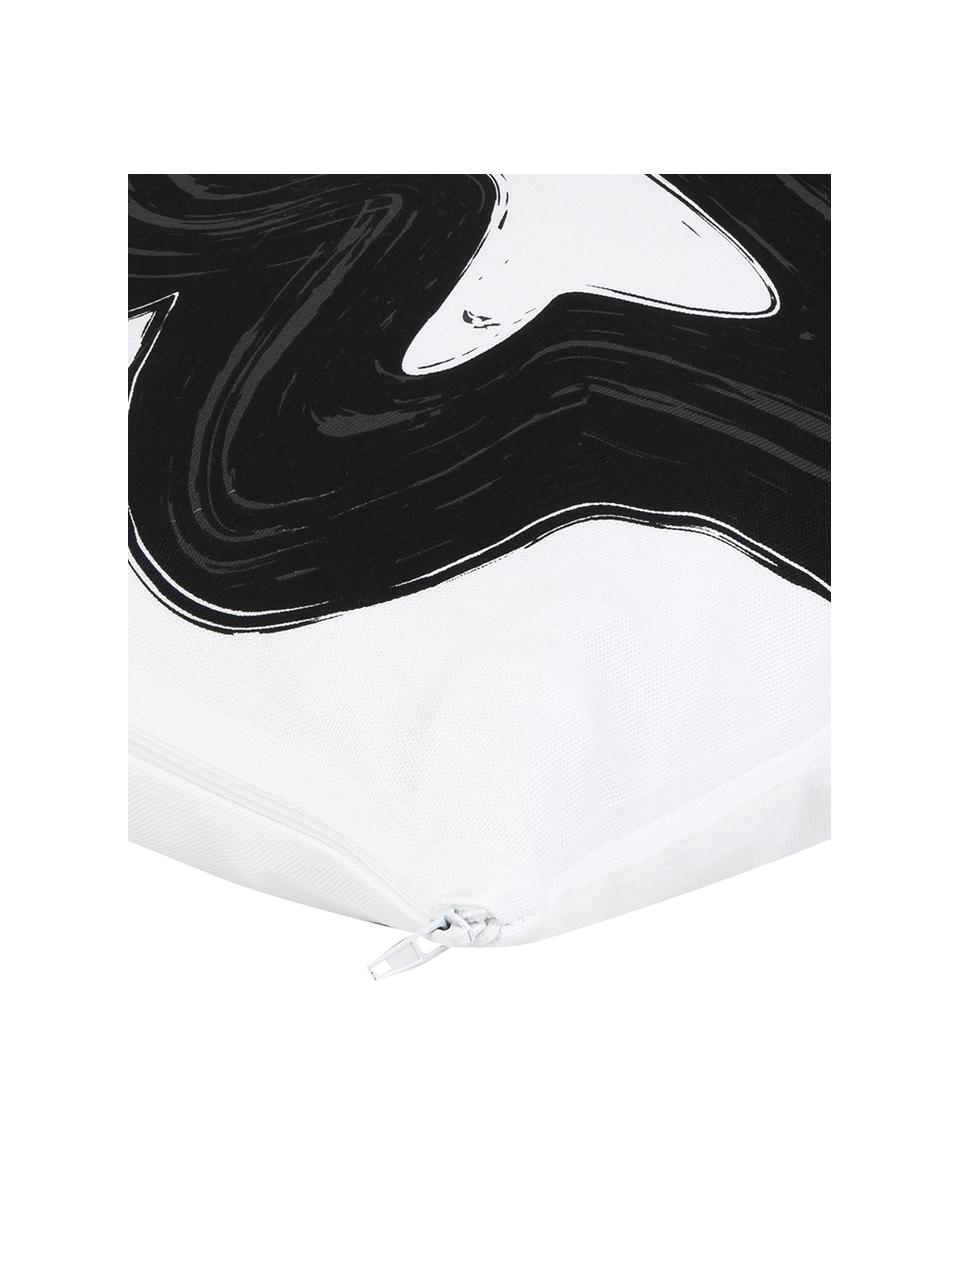 Kissenhülle Brush mit abstraktem Print, 100% Baumwolle, Schwarz/Weiß, 40 x 40 cm